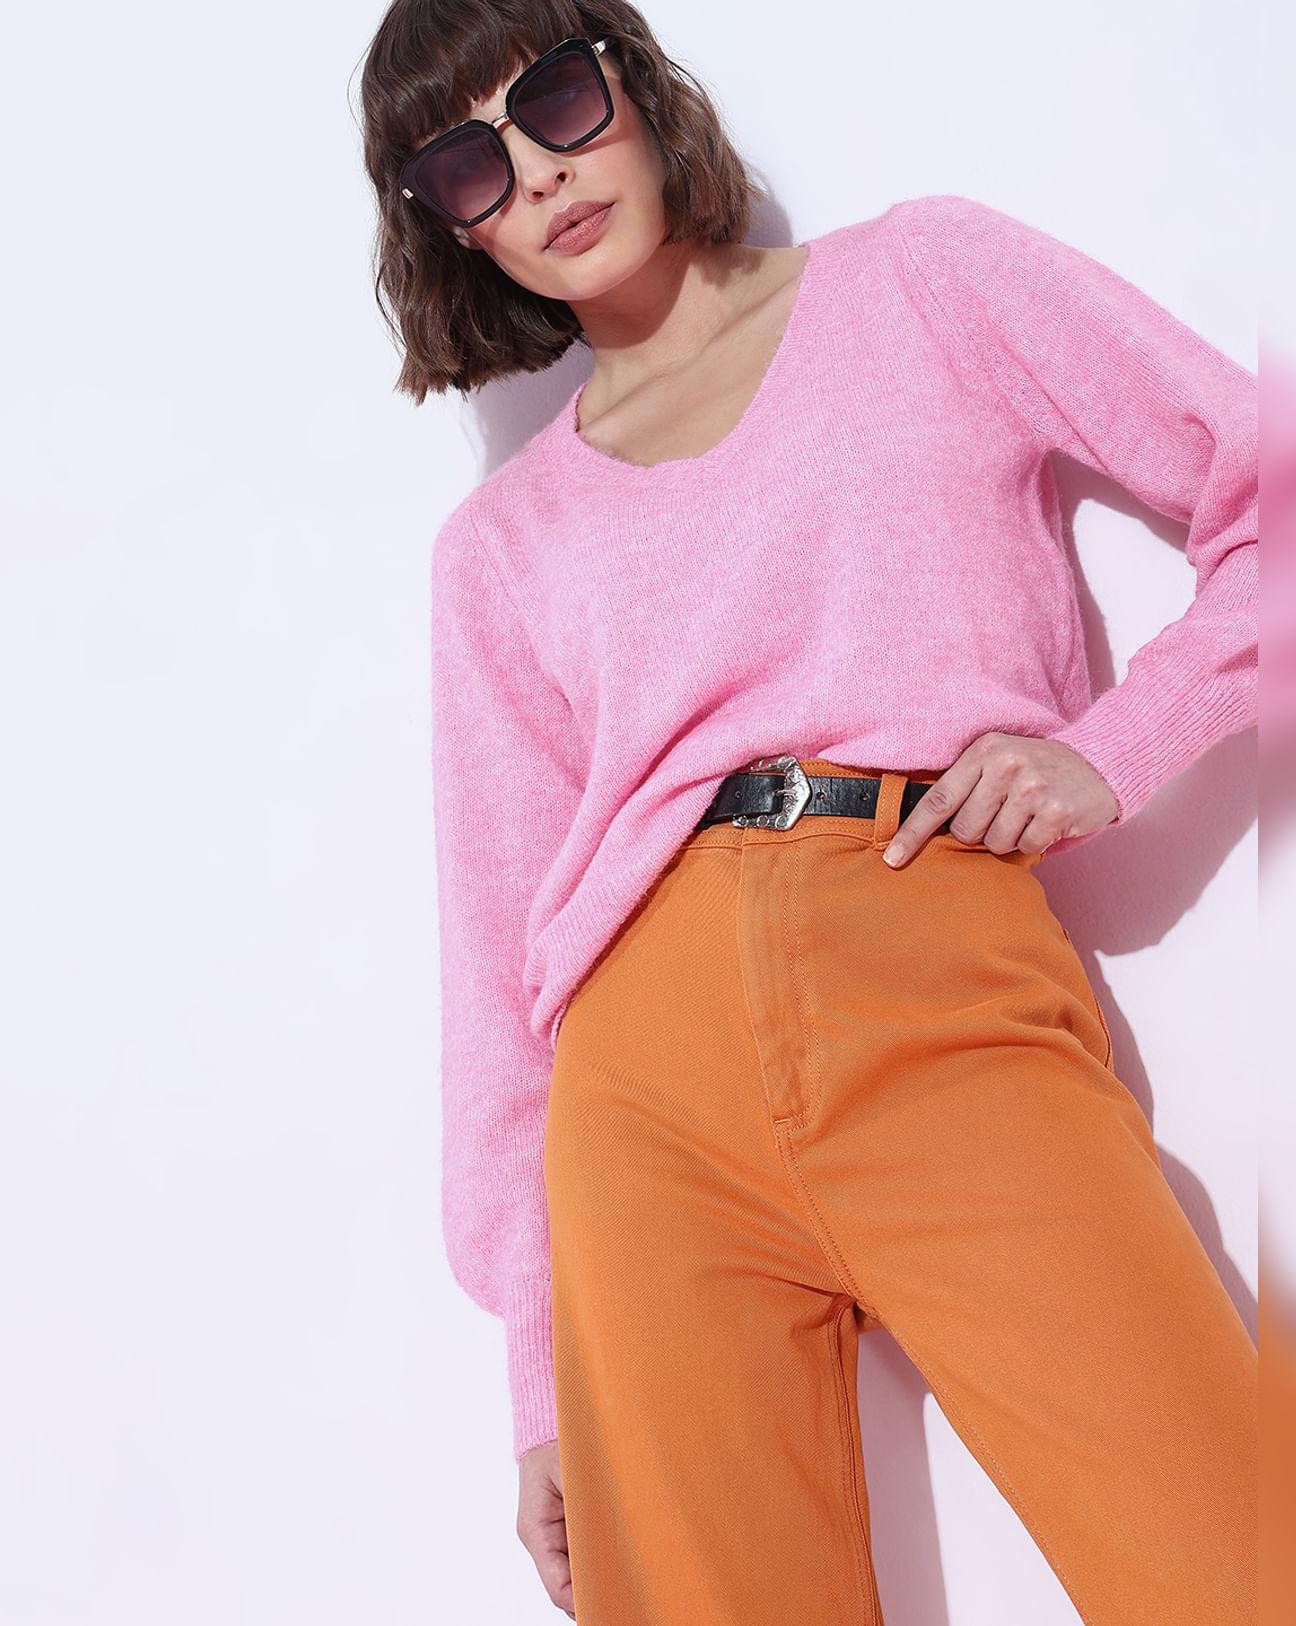 Pink V-Neck Pullover